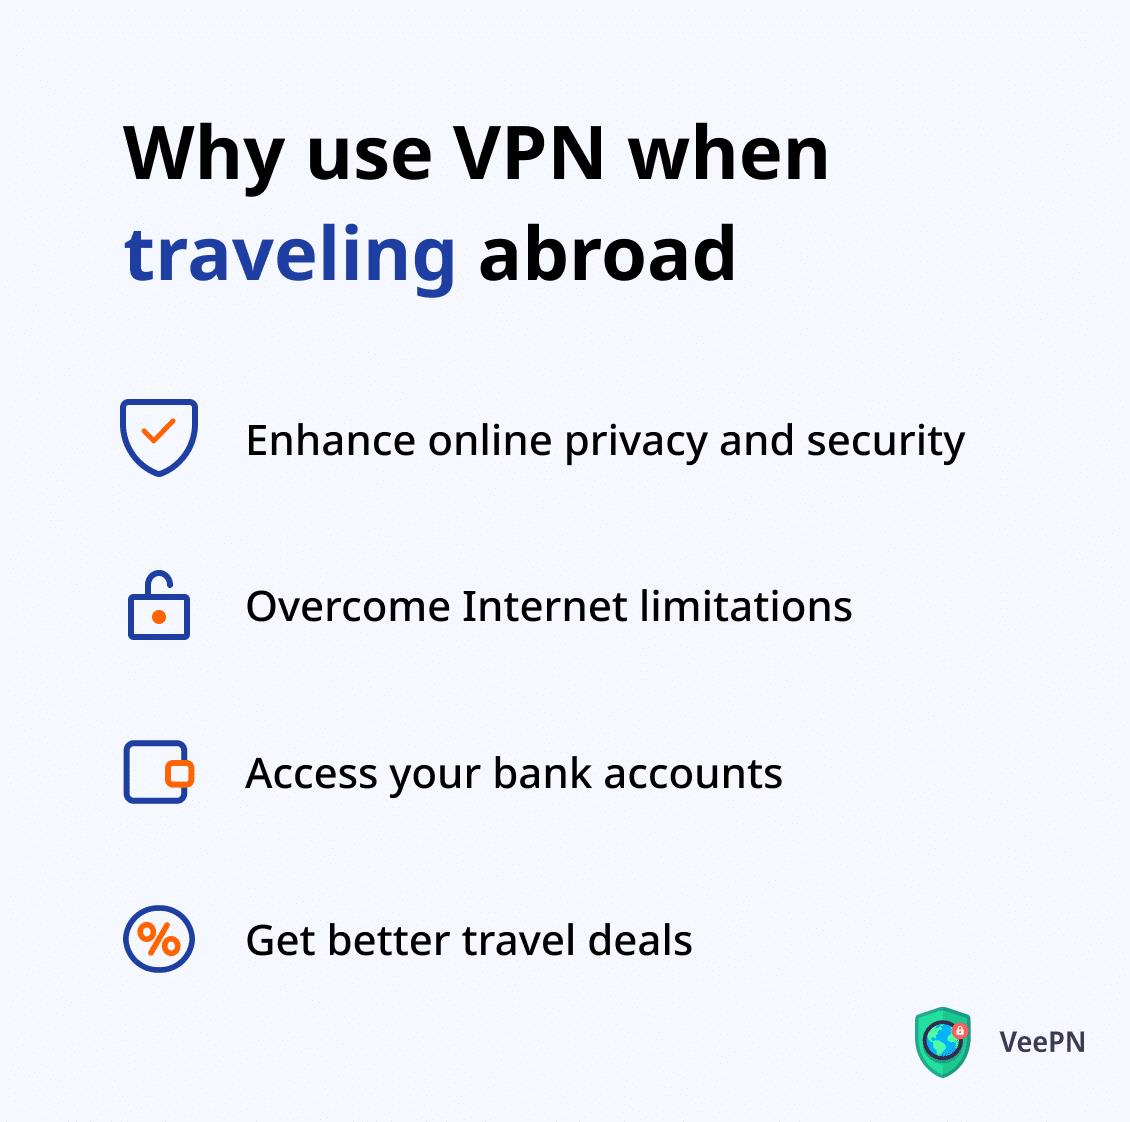 VPN for international travel